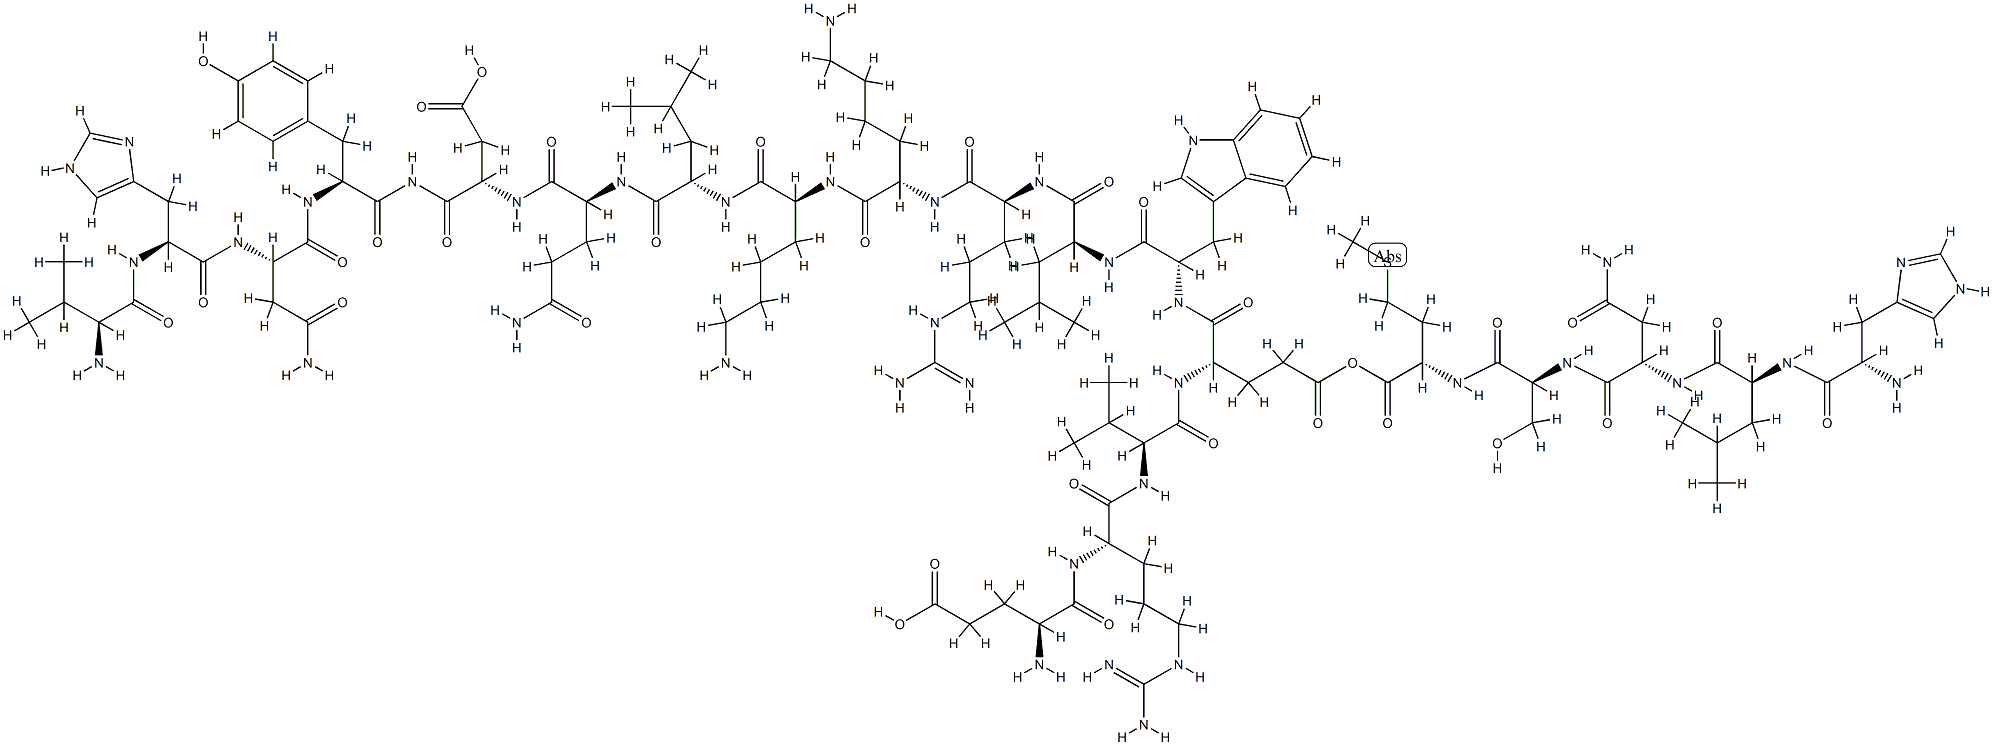 parathyroid hormone (14-34) amide, Tyr(34)-|